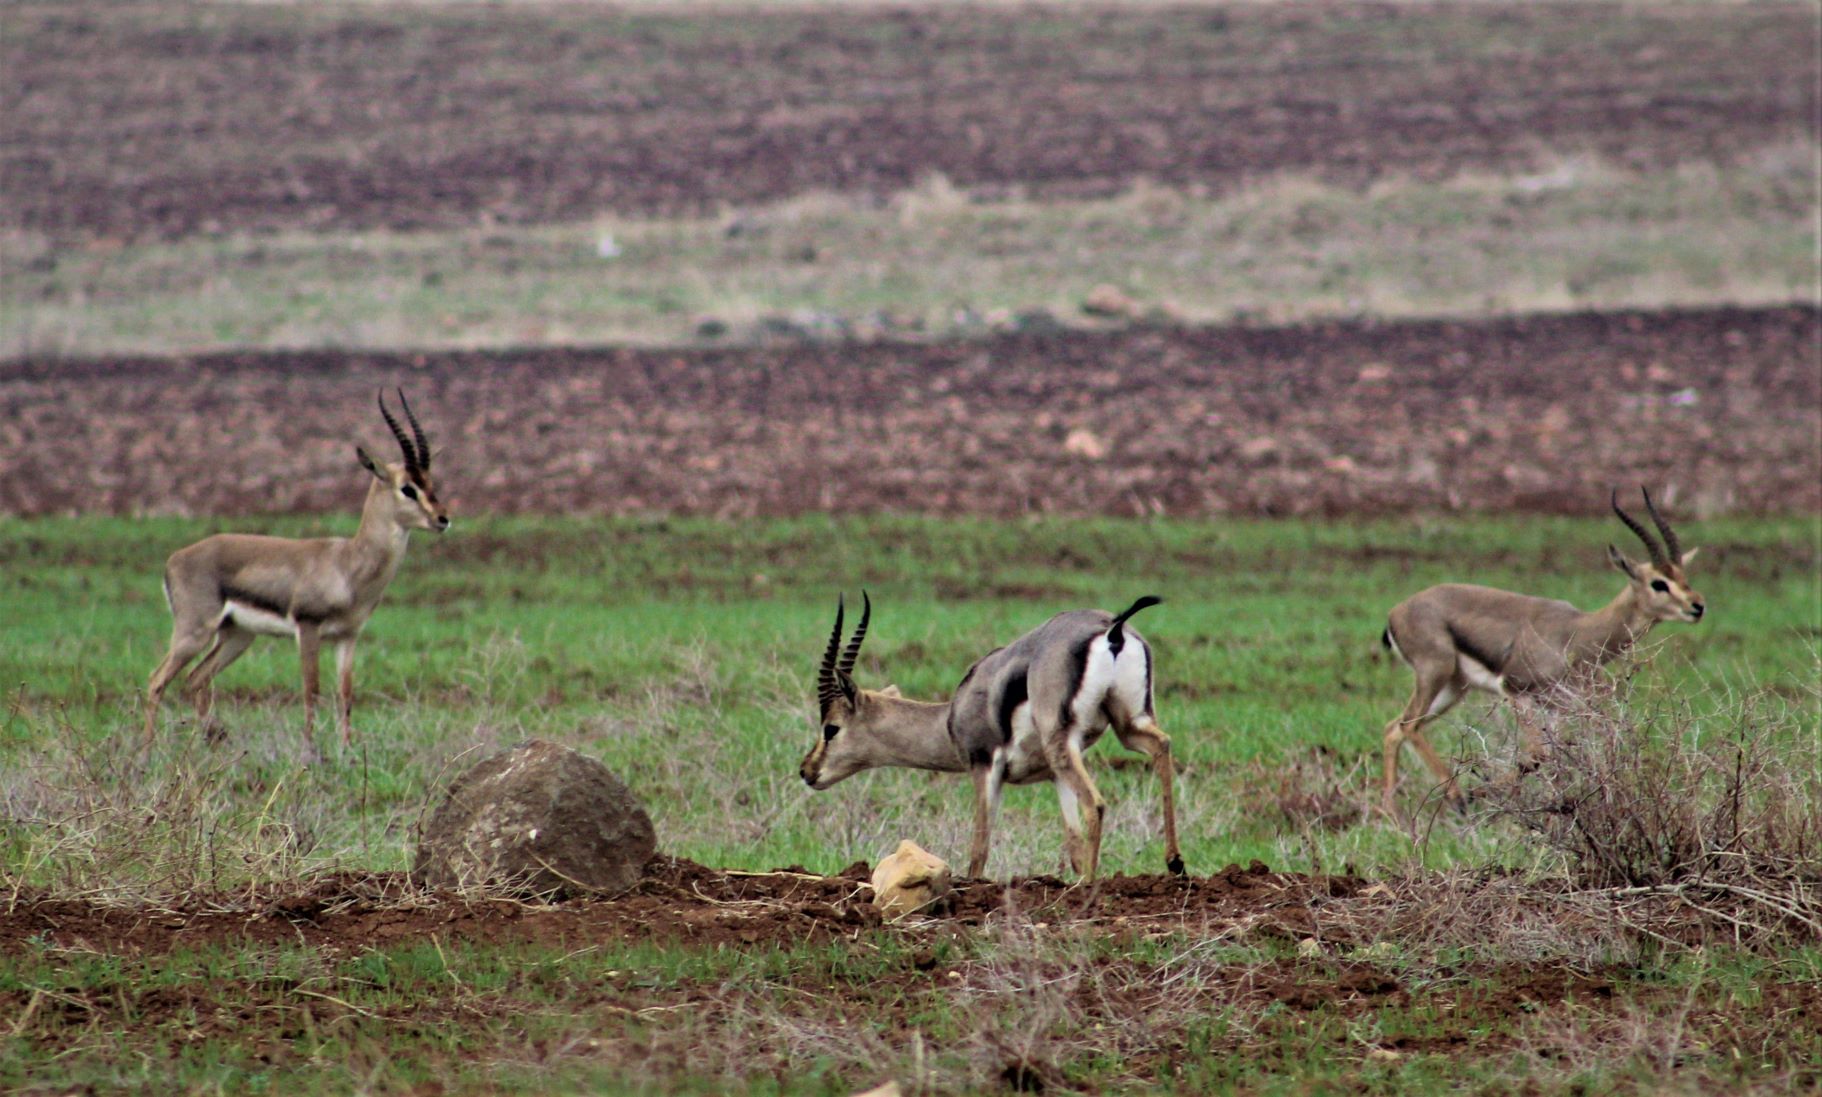 Male mountain gazelles in Hatay